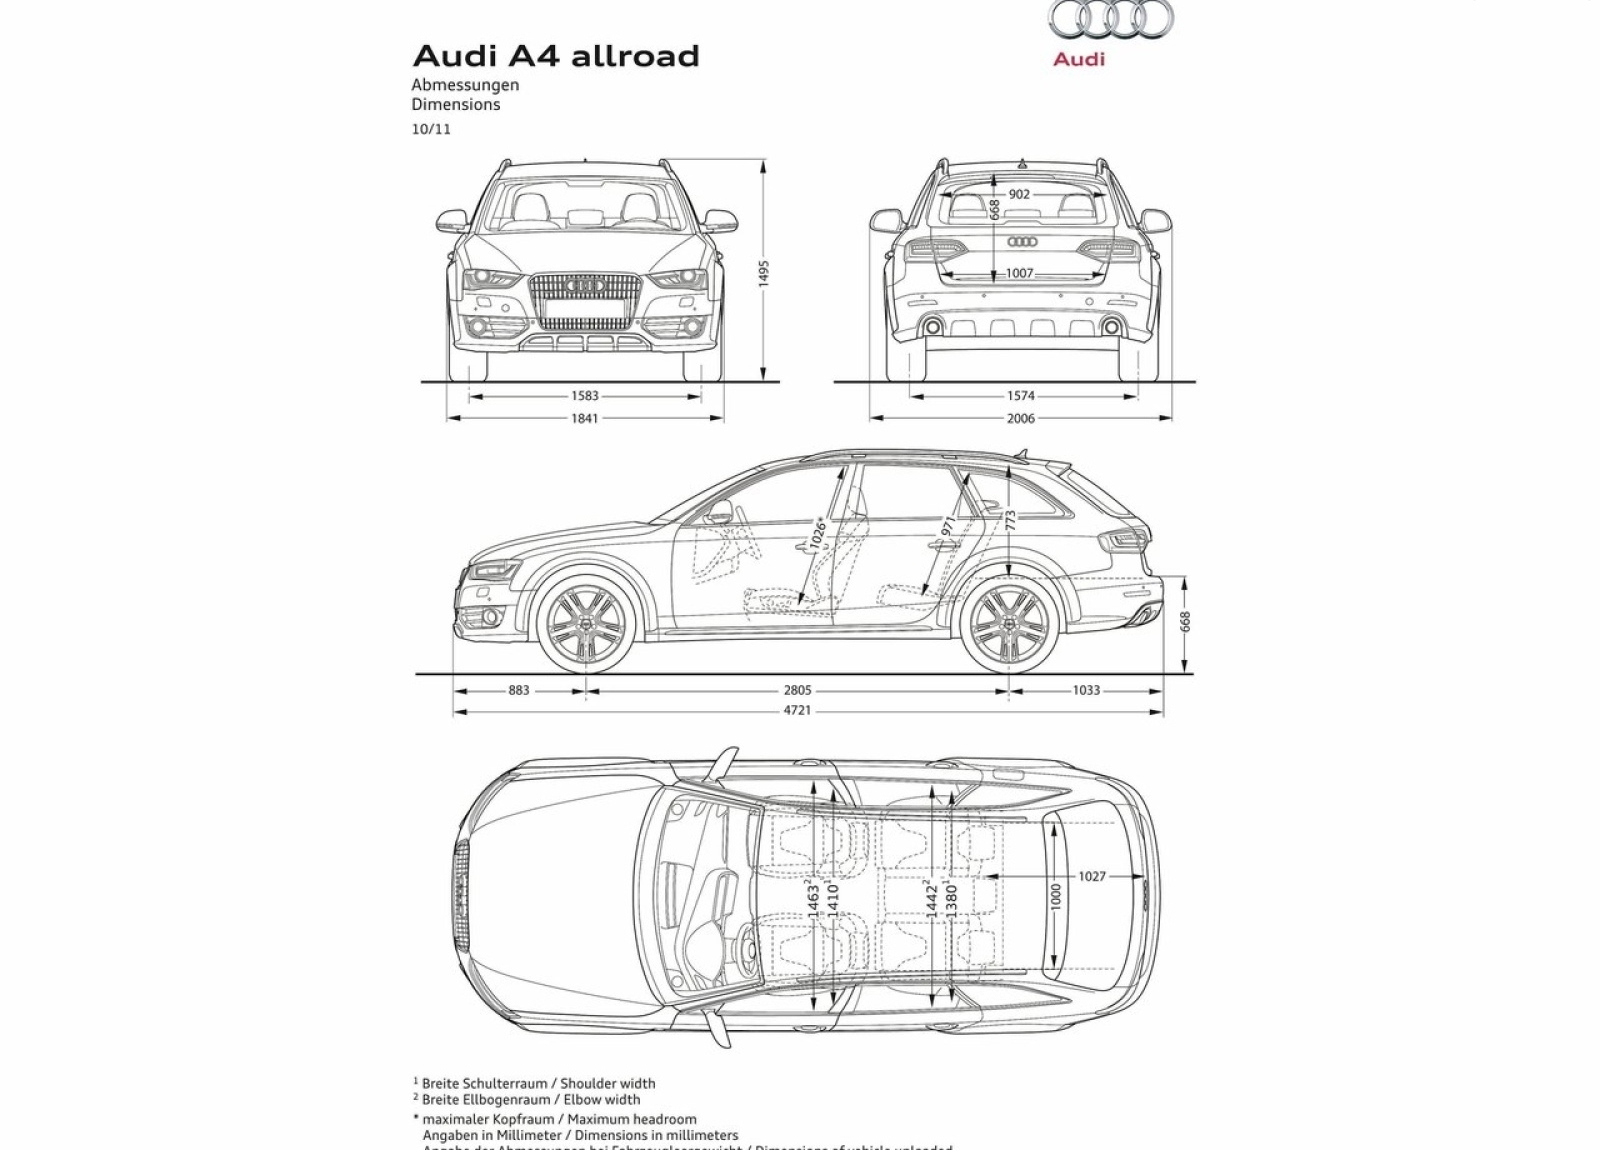 Audi 2013_A4_allroad_quattro_wallpaper 1600x1200_0038